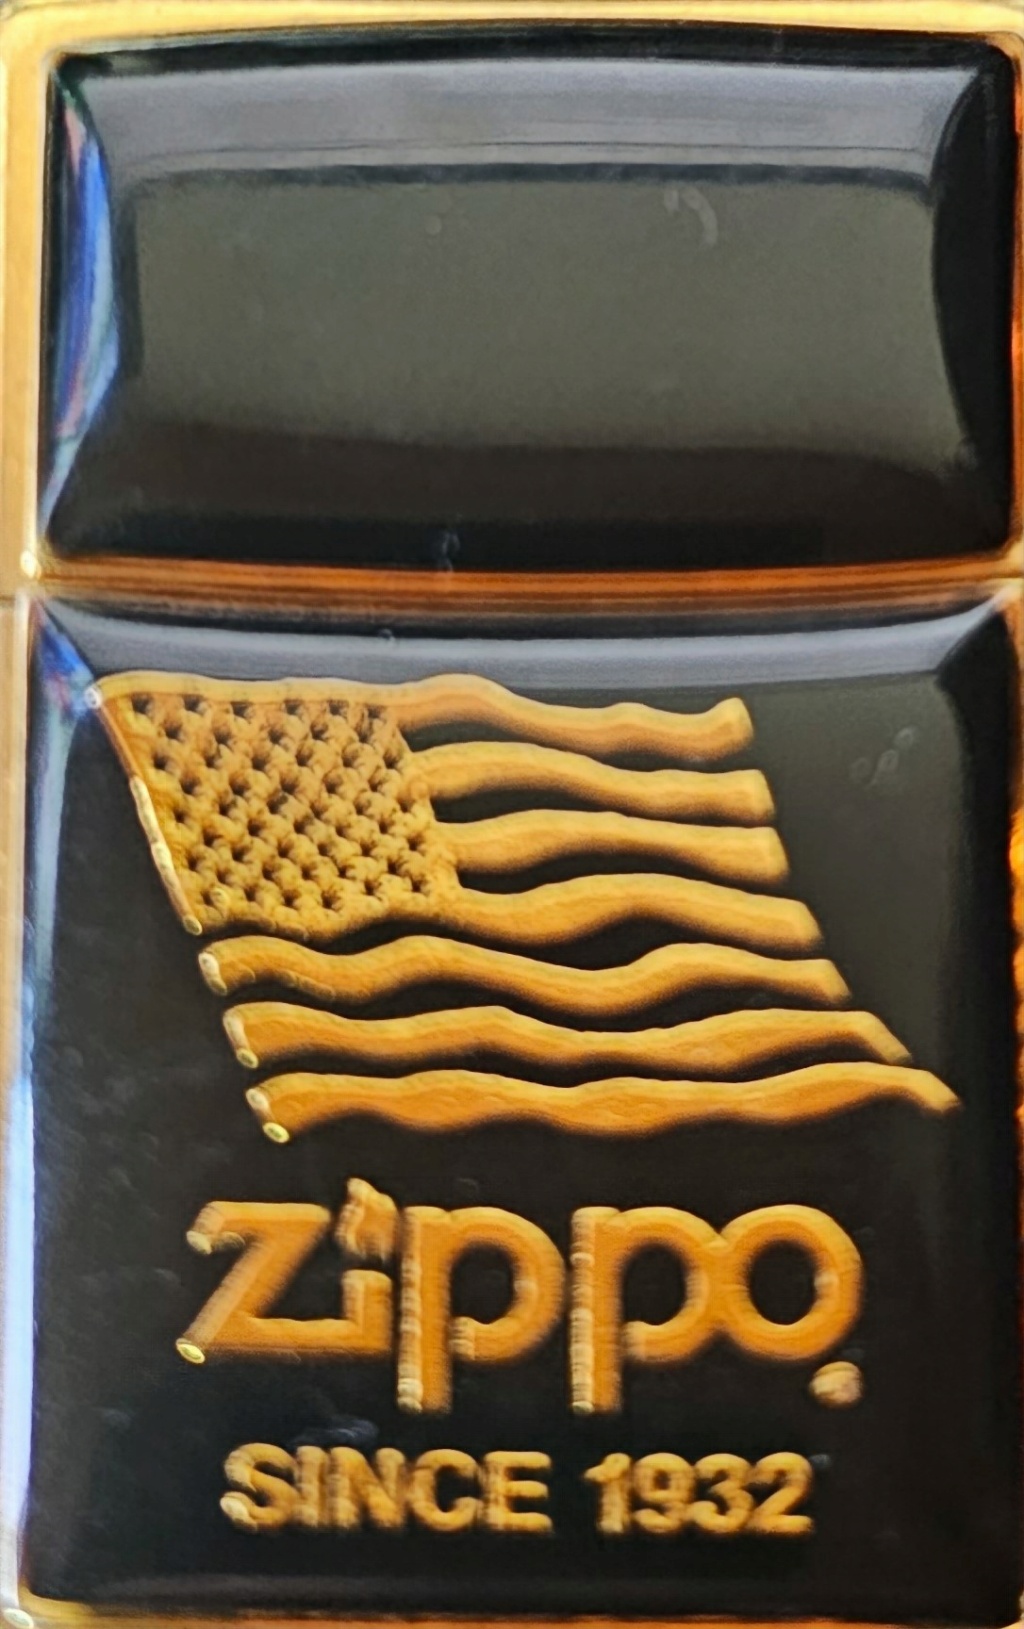 1932 - Zippo Doré Drapeau Américian "Zippo Since 1932" Identificati Thumbn10